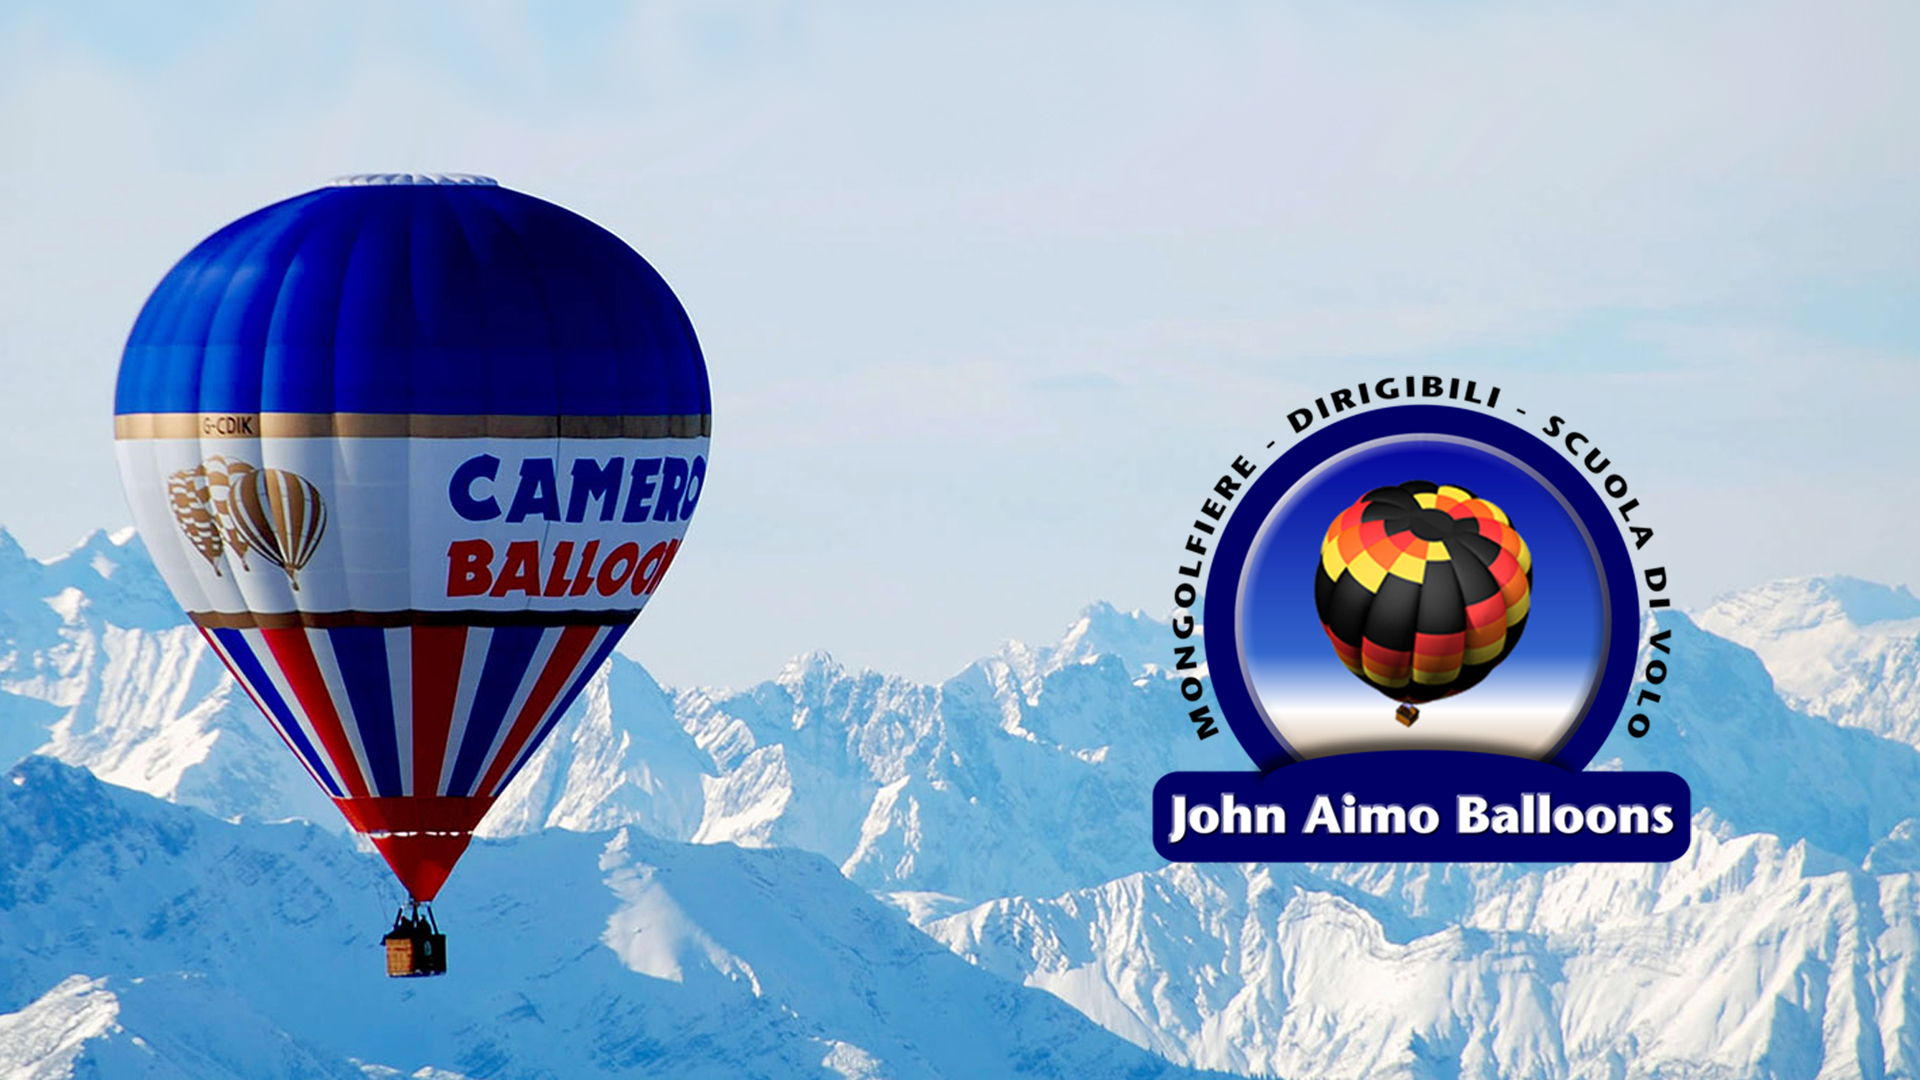 John Aimo Balloons